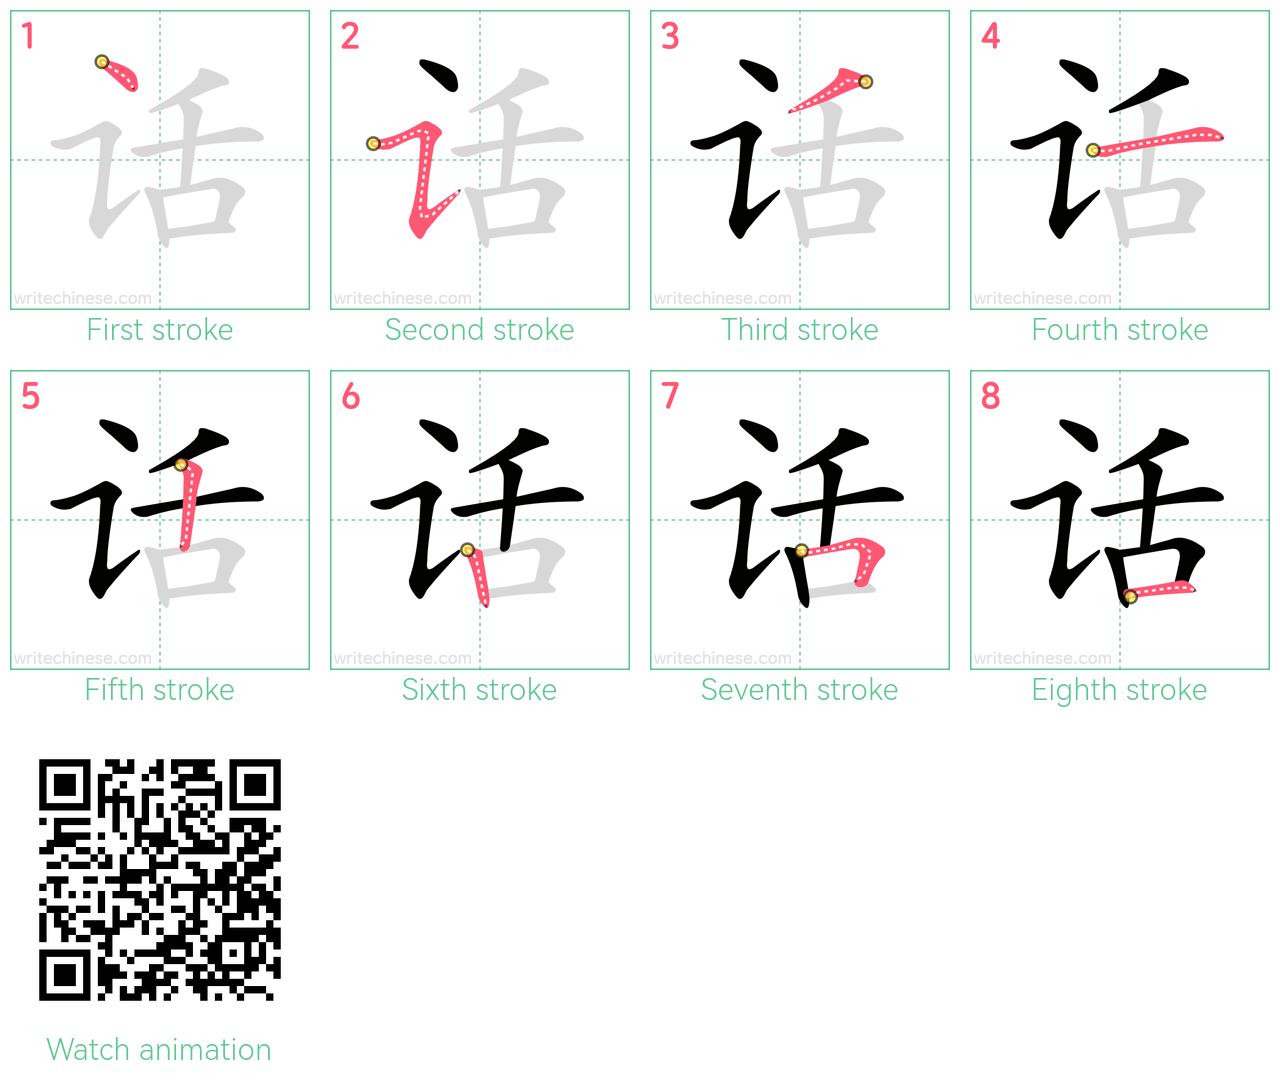 话 step-by-step stroke order diagrams